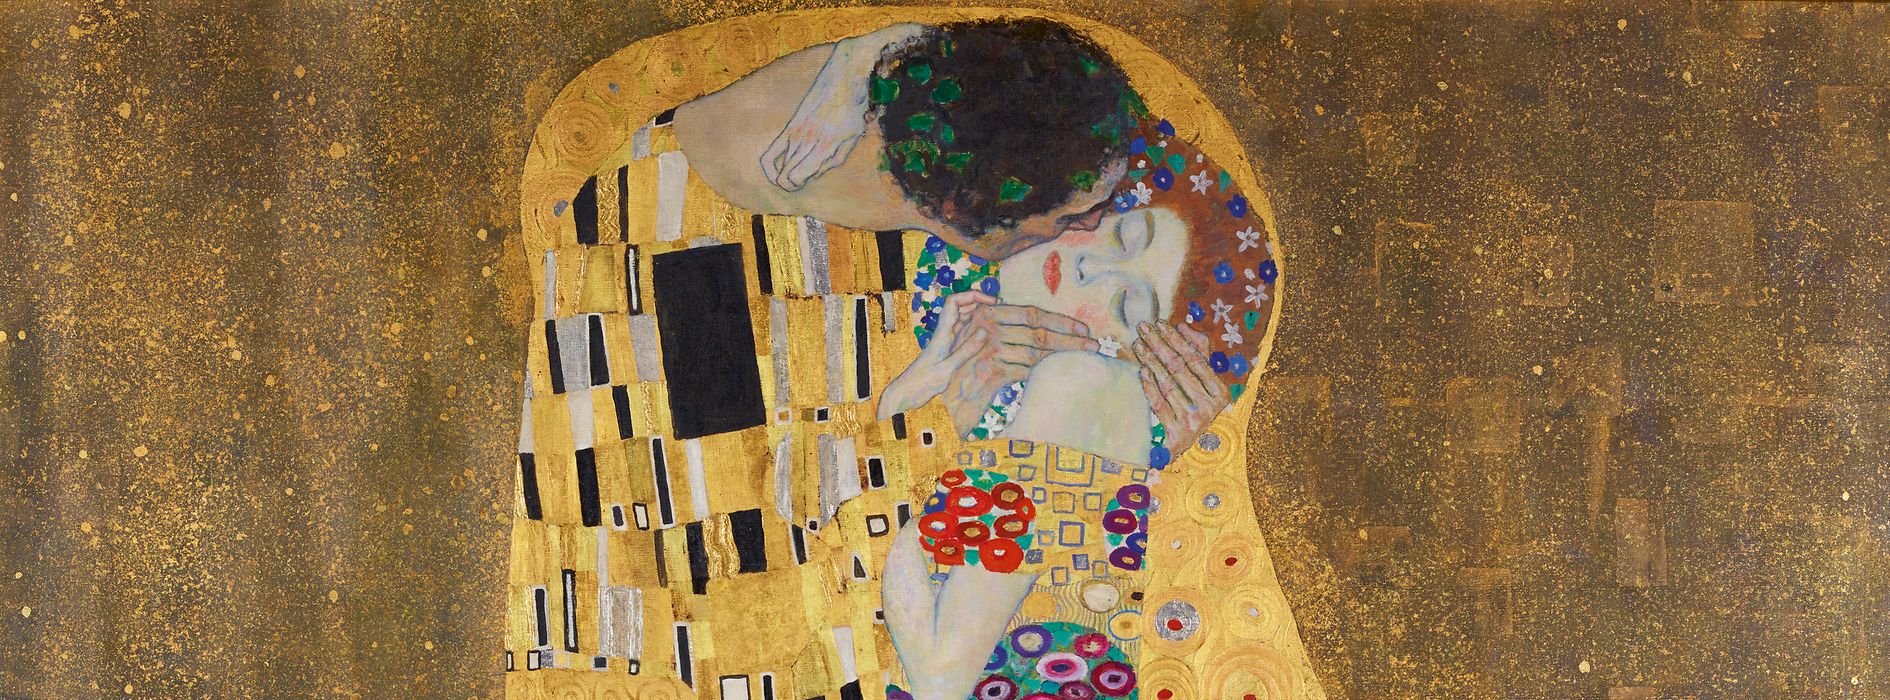 Tableau « Le Baiser » de Gustav Klimt